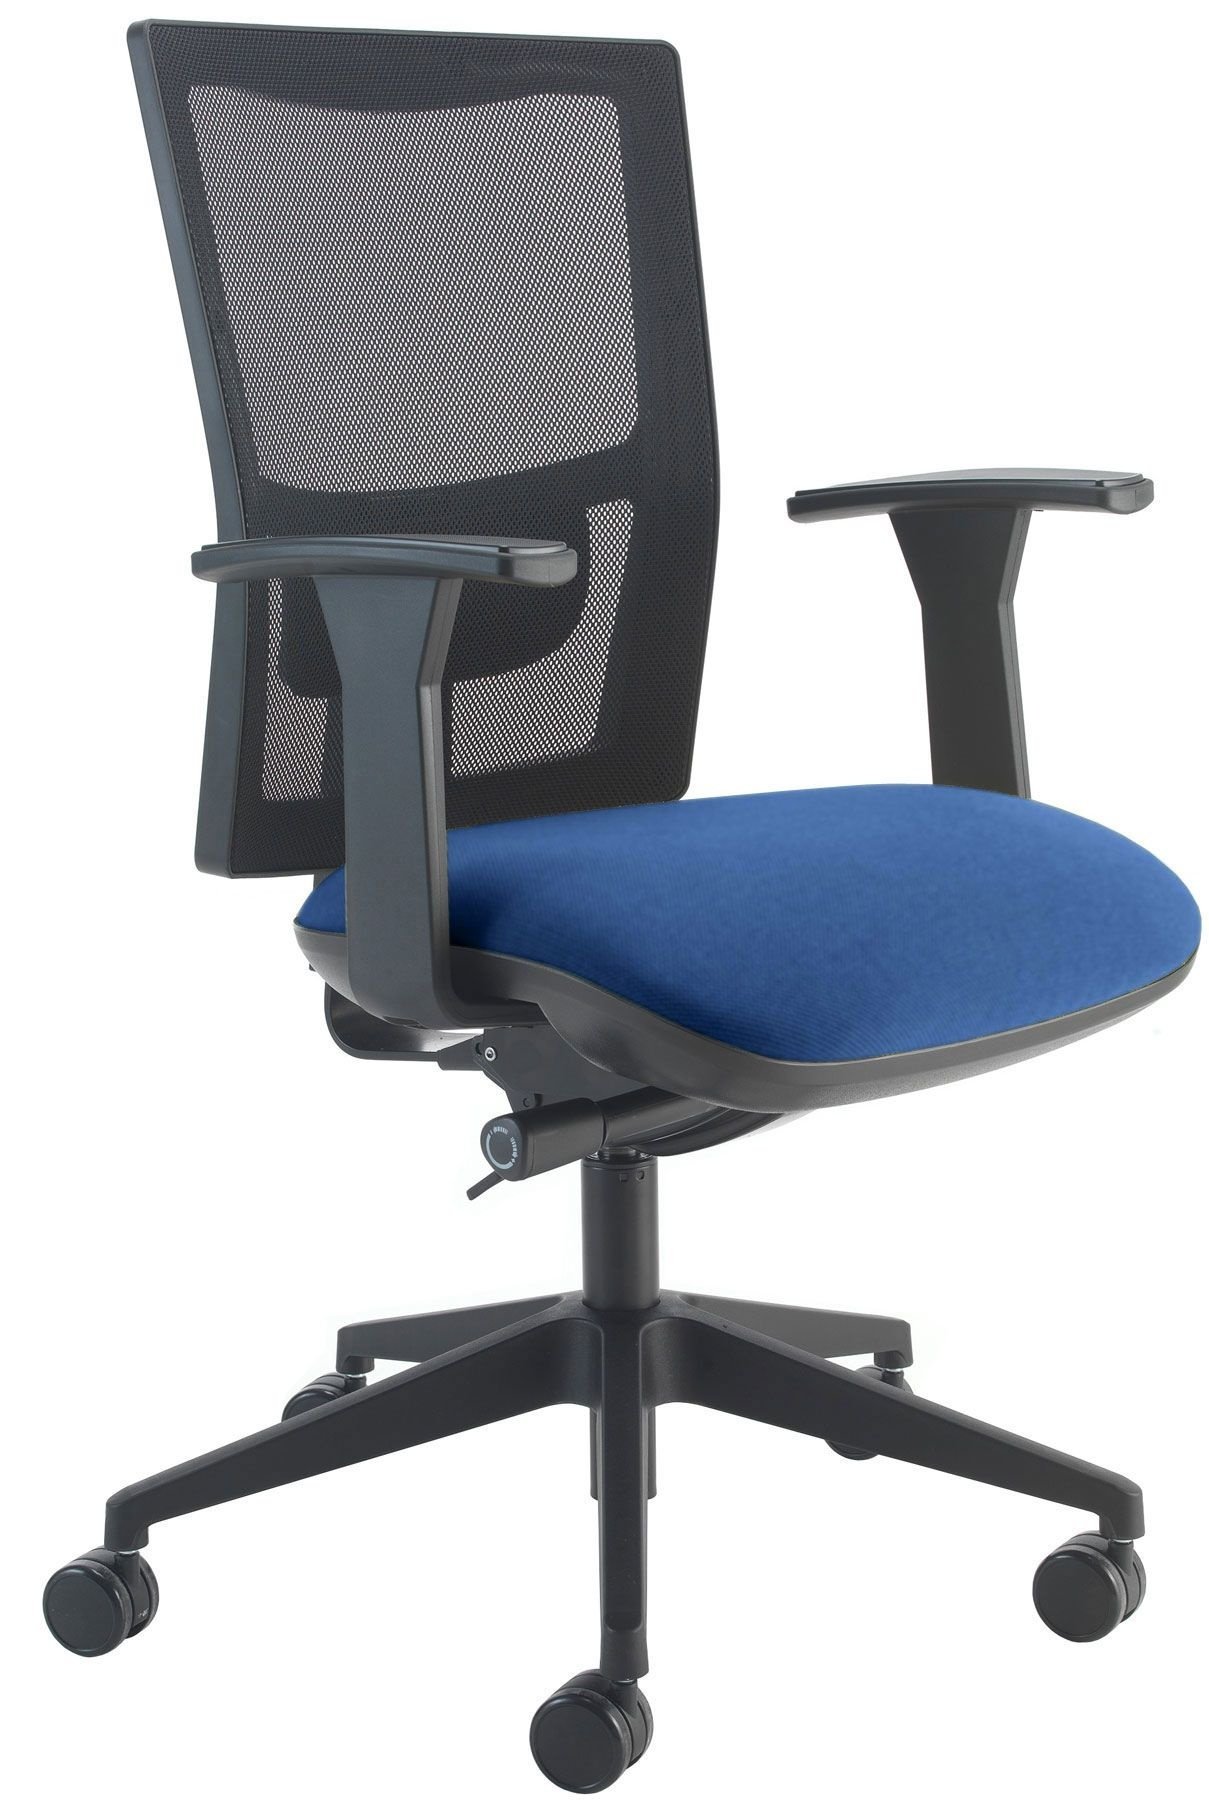 2 In Stock Bargain £89 Each Gresham Santis Ergonomic Office Swivel Chairs 